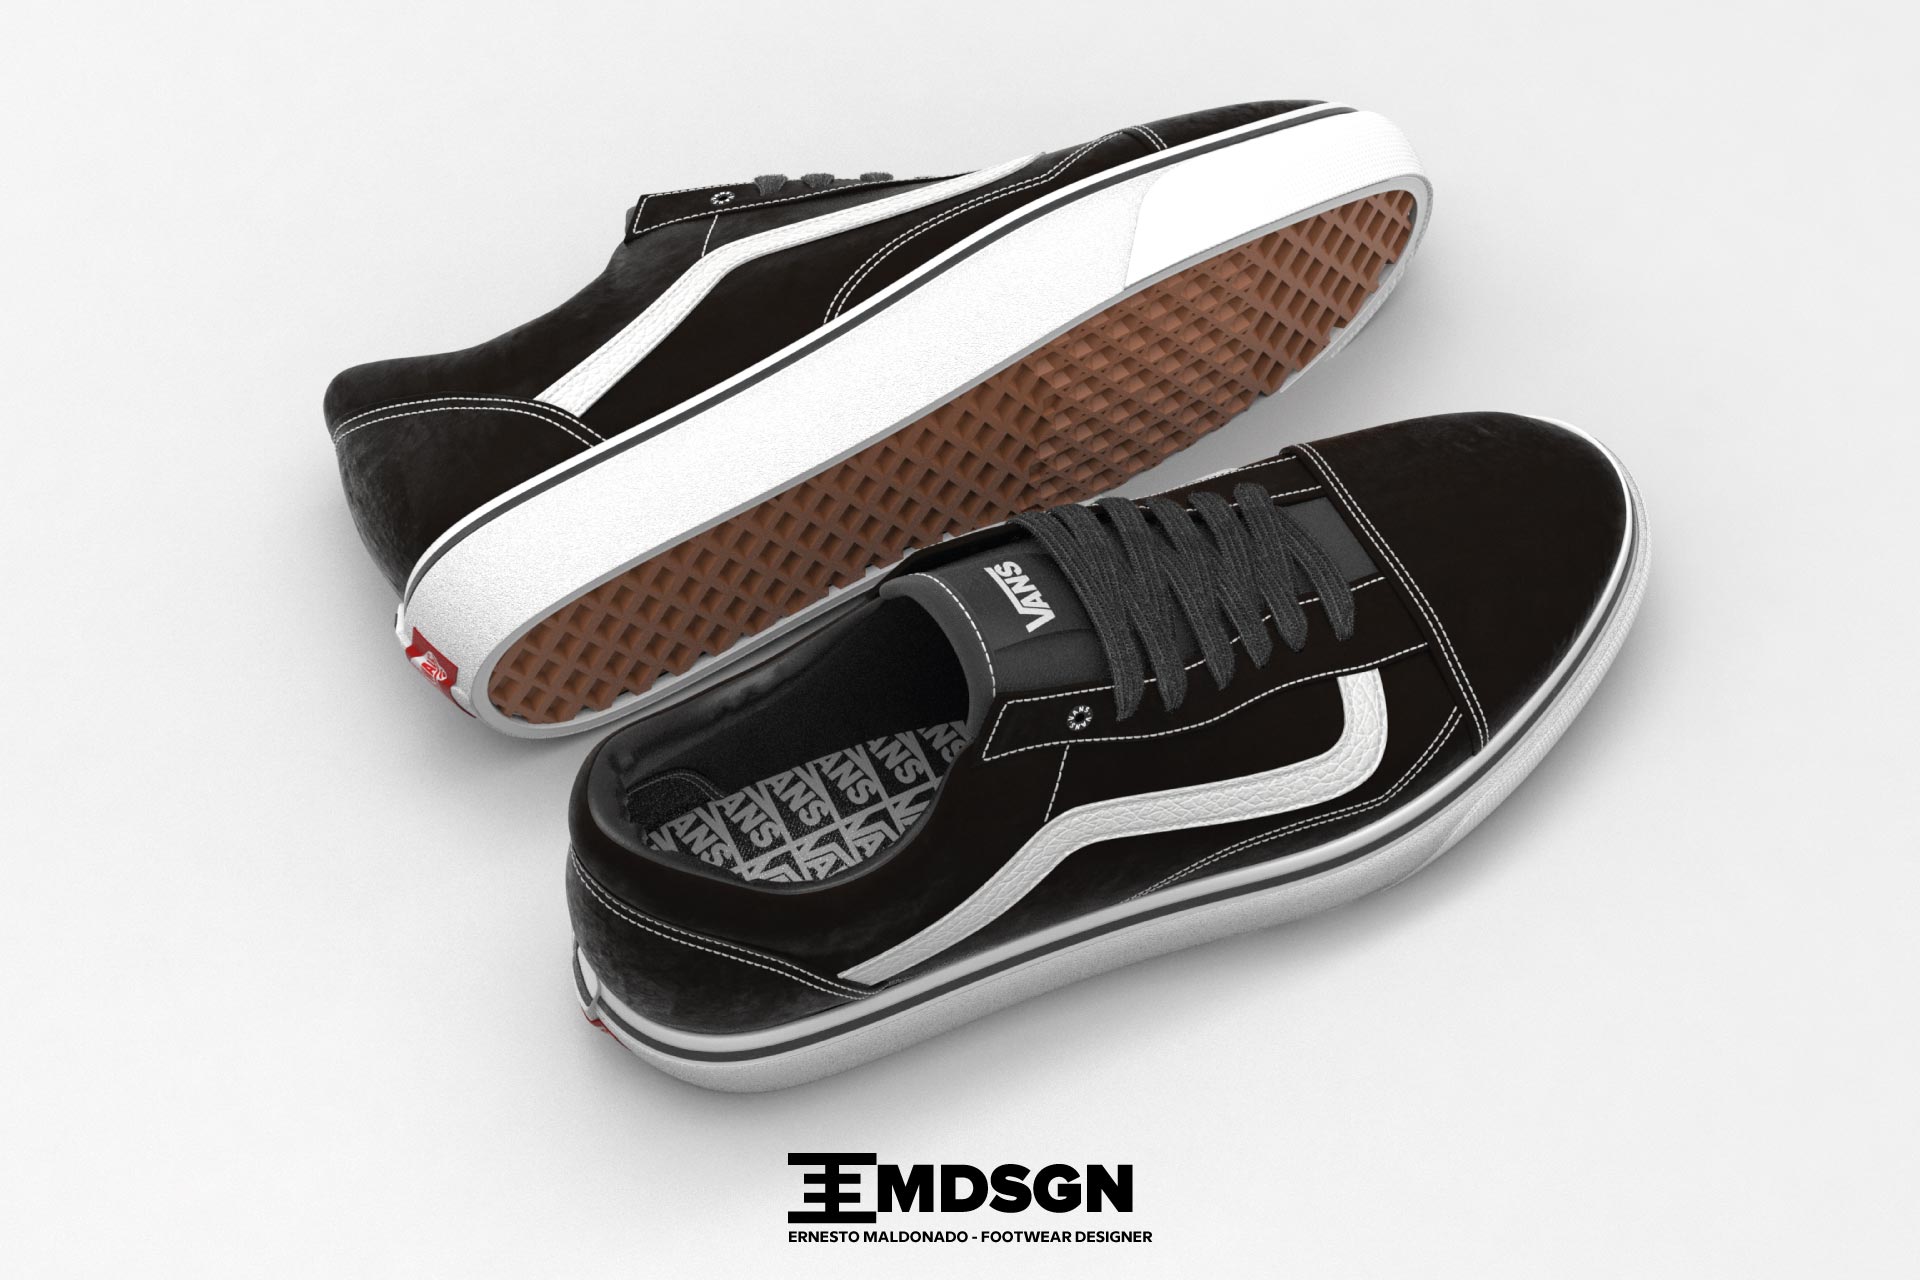 3d-footwear-design-3D-Vans-Old-Skool---ernesto maldonado